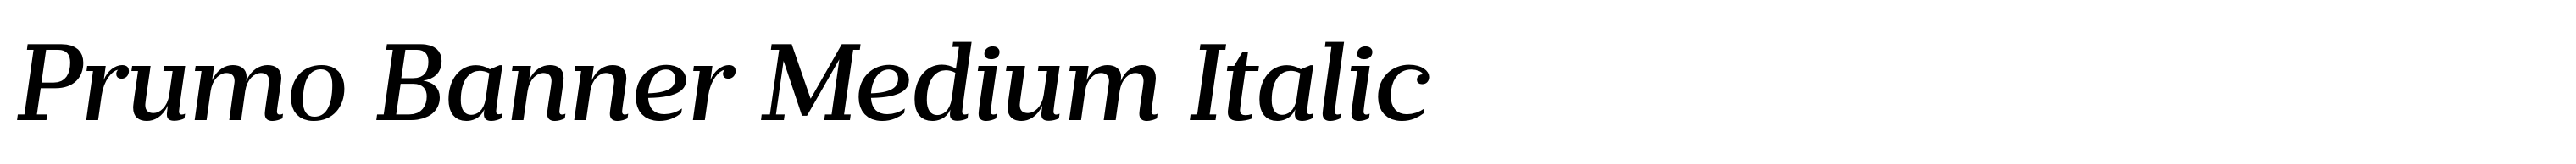 Prumo Banner Medium Italic